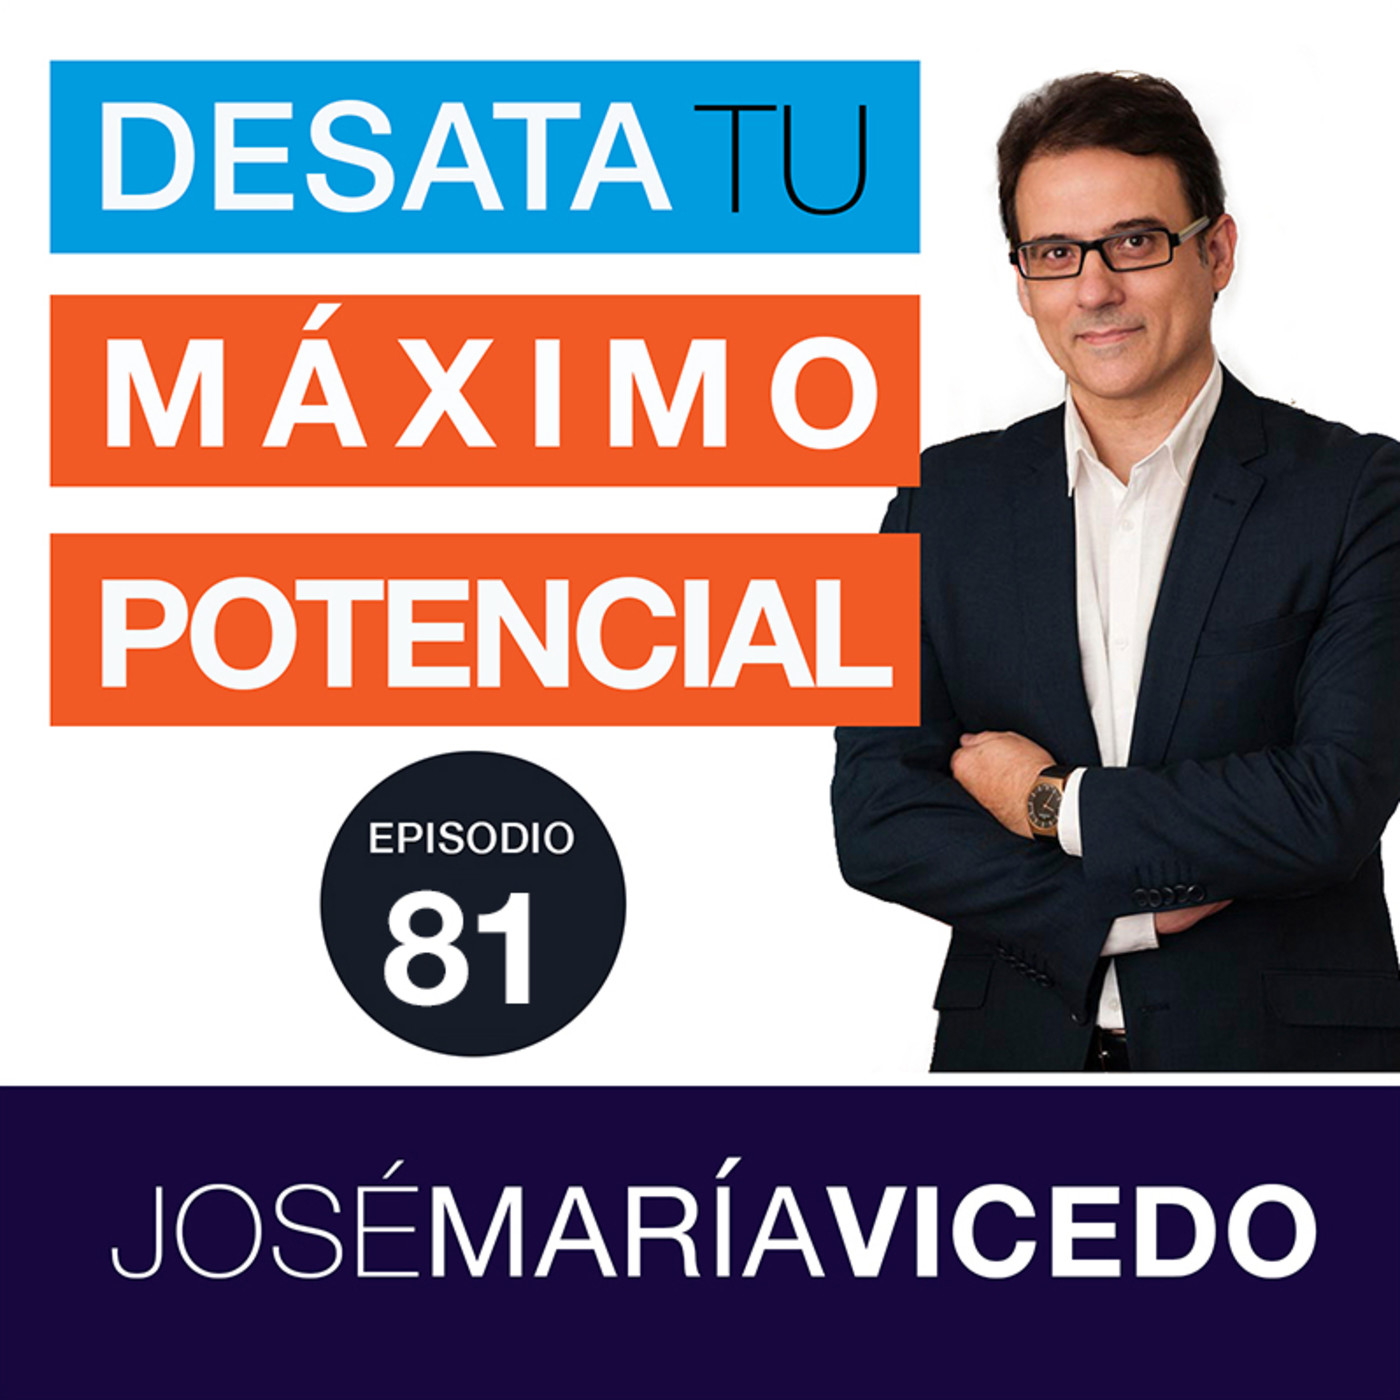 LAS DOS PREGUNTAS FUNDAMENTALES QUE DETERMINAN TUS RESULTADOS / José María Vicedo | Ep.81